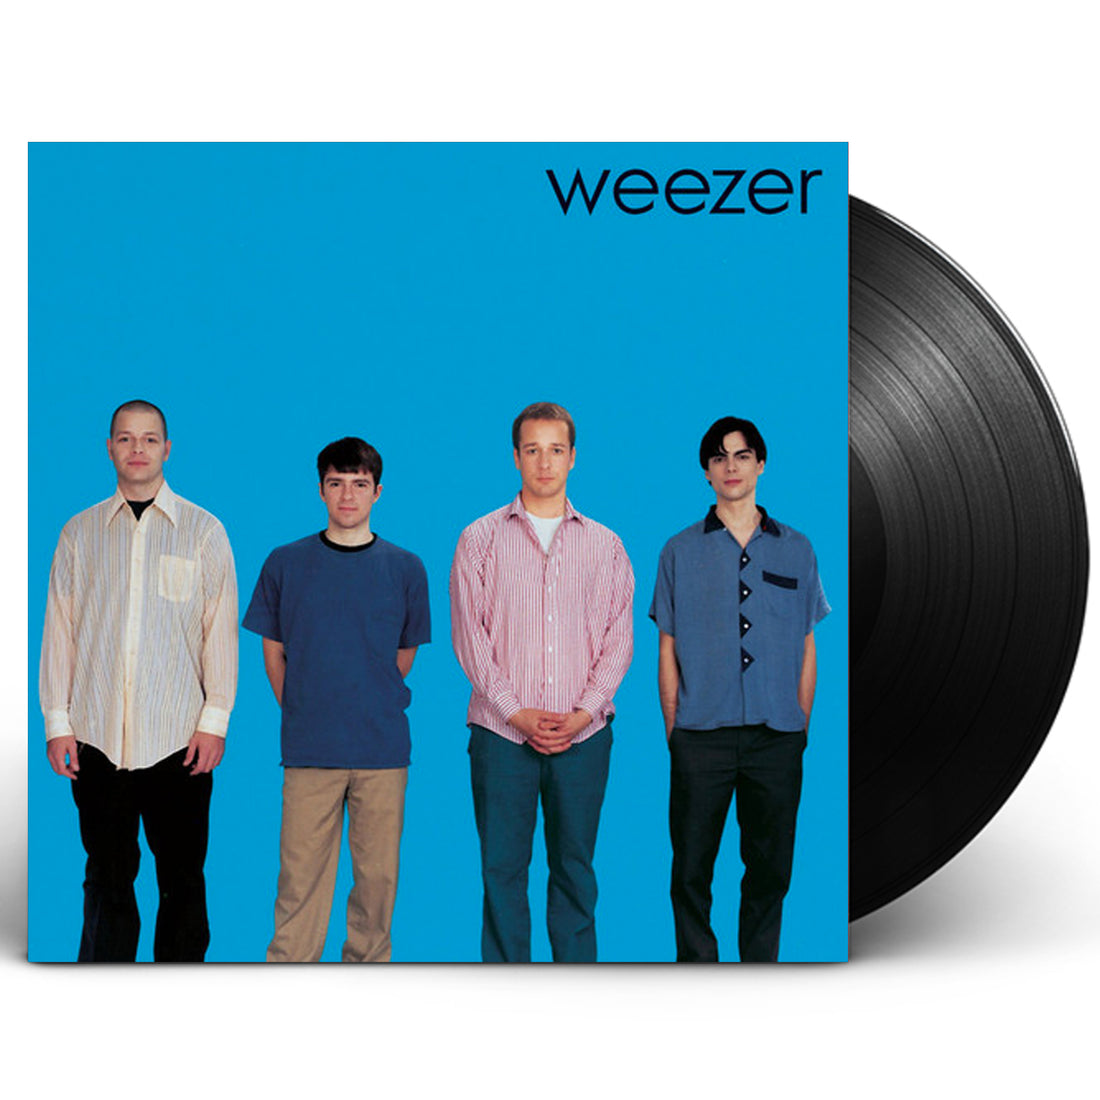 Weezer "Weezer" (Blue Album) LP Vinyl